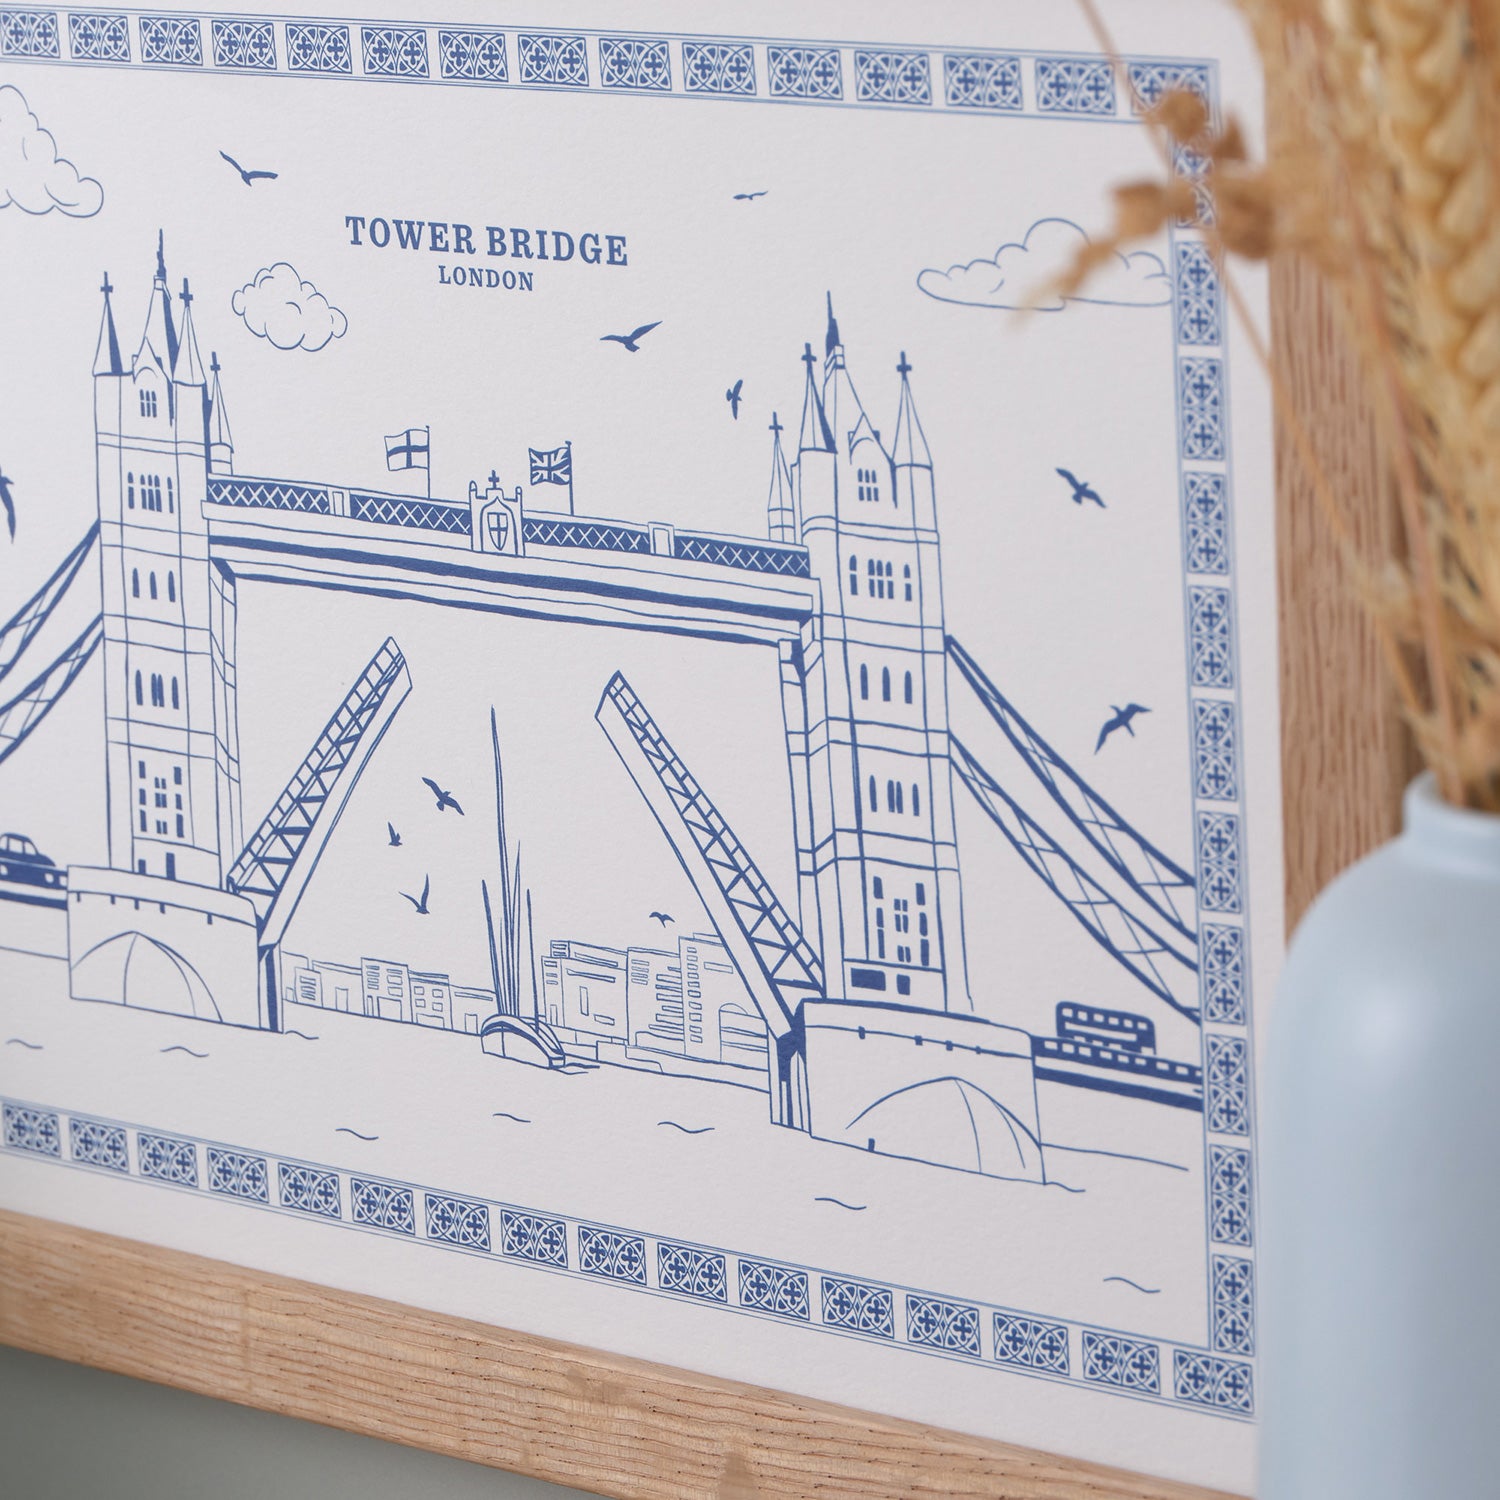 Tower Bridge A4 Print by Victoria Eggs 2